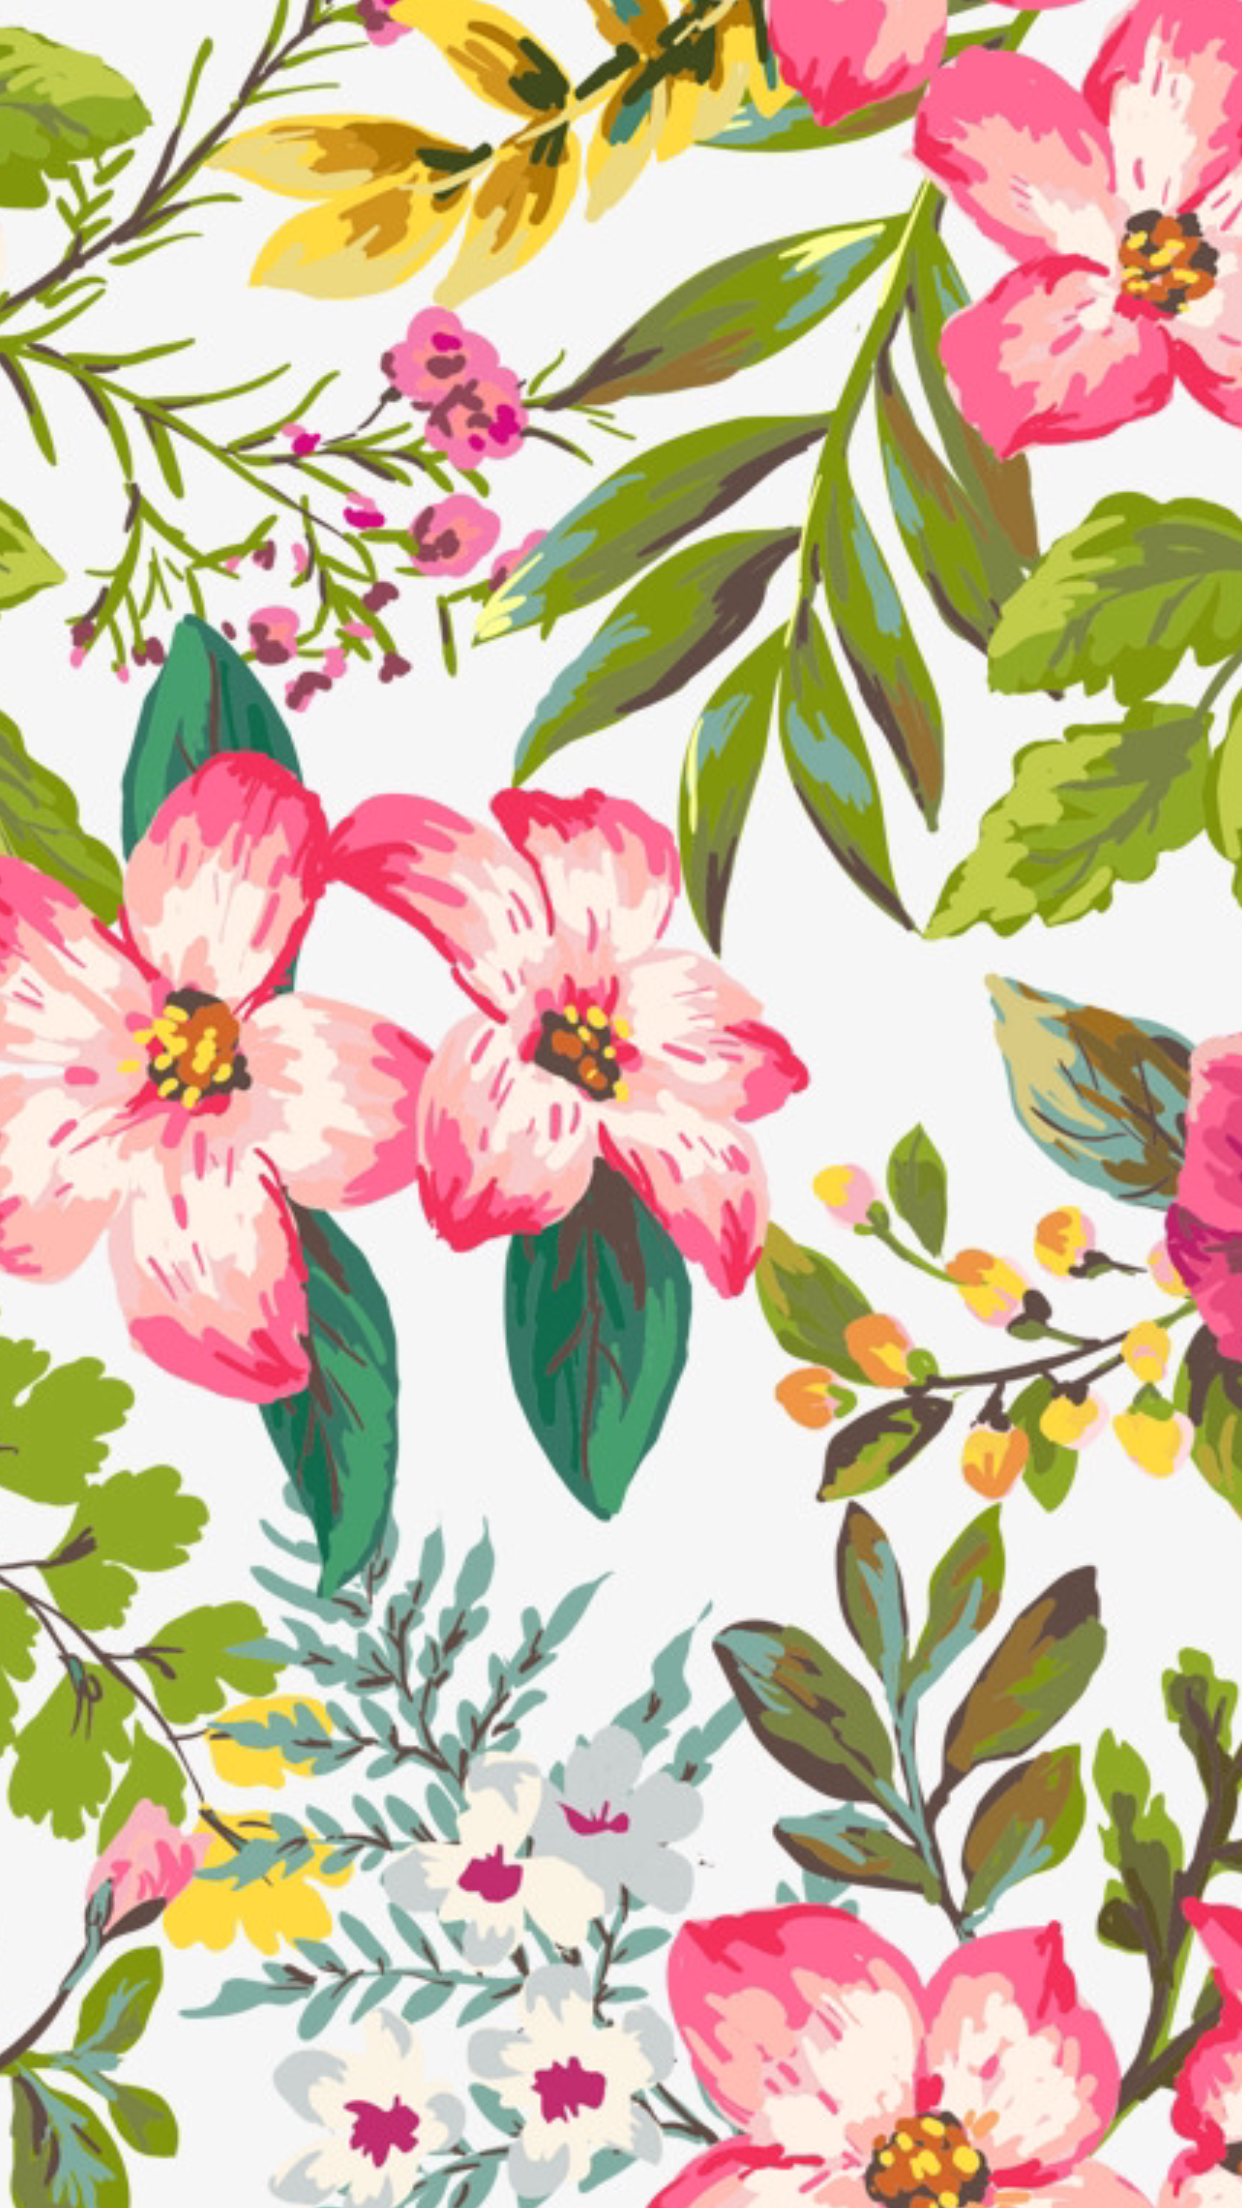 귀여운 꽃 무늬 벽지,꽃,분홍,식물,꽃 피는 식물,무늬